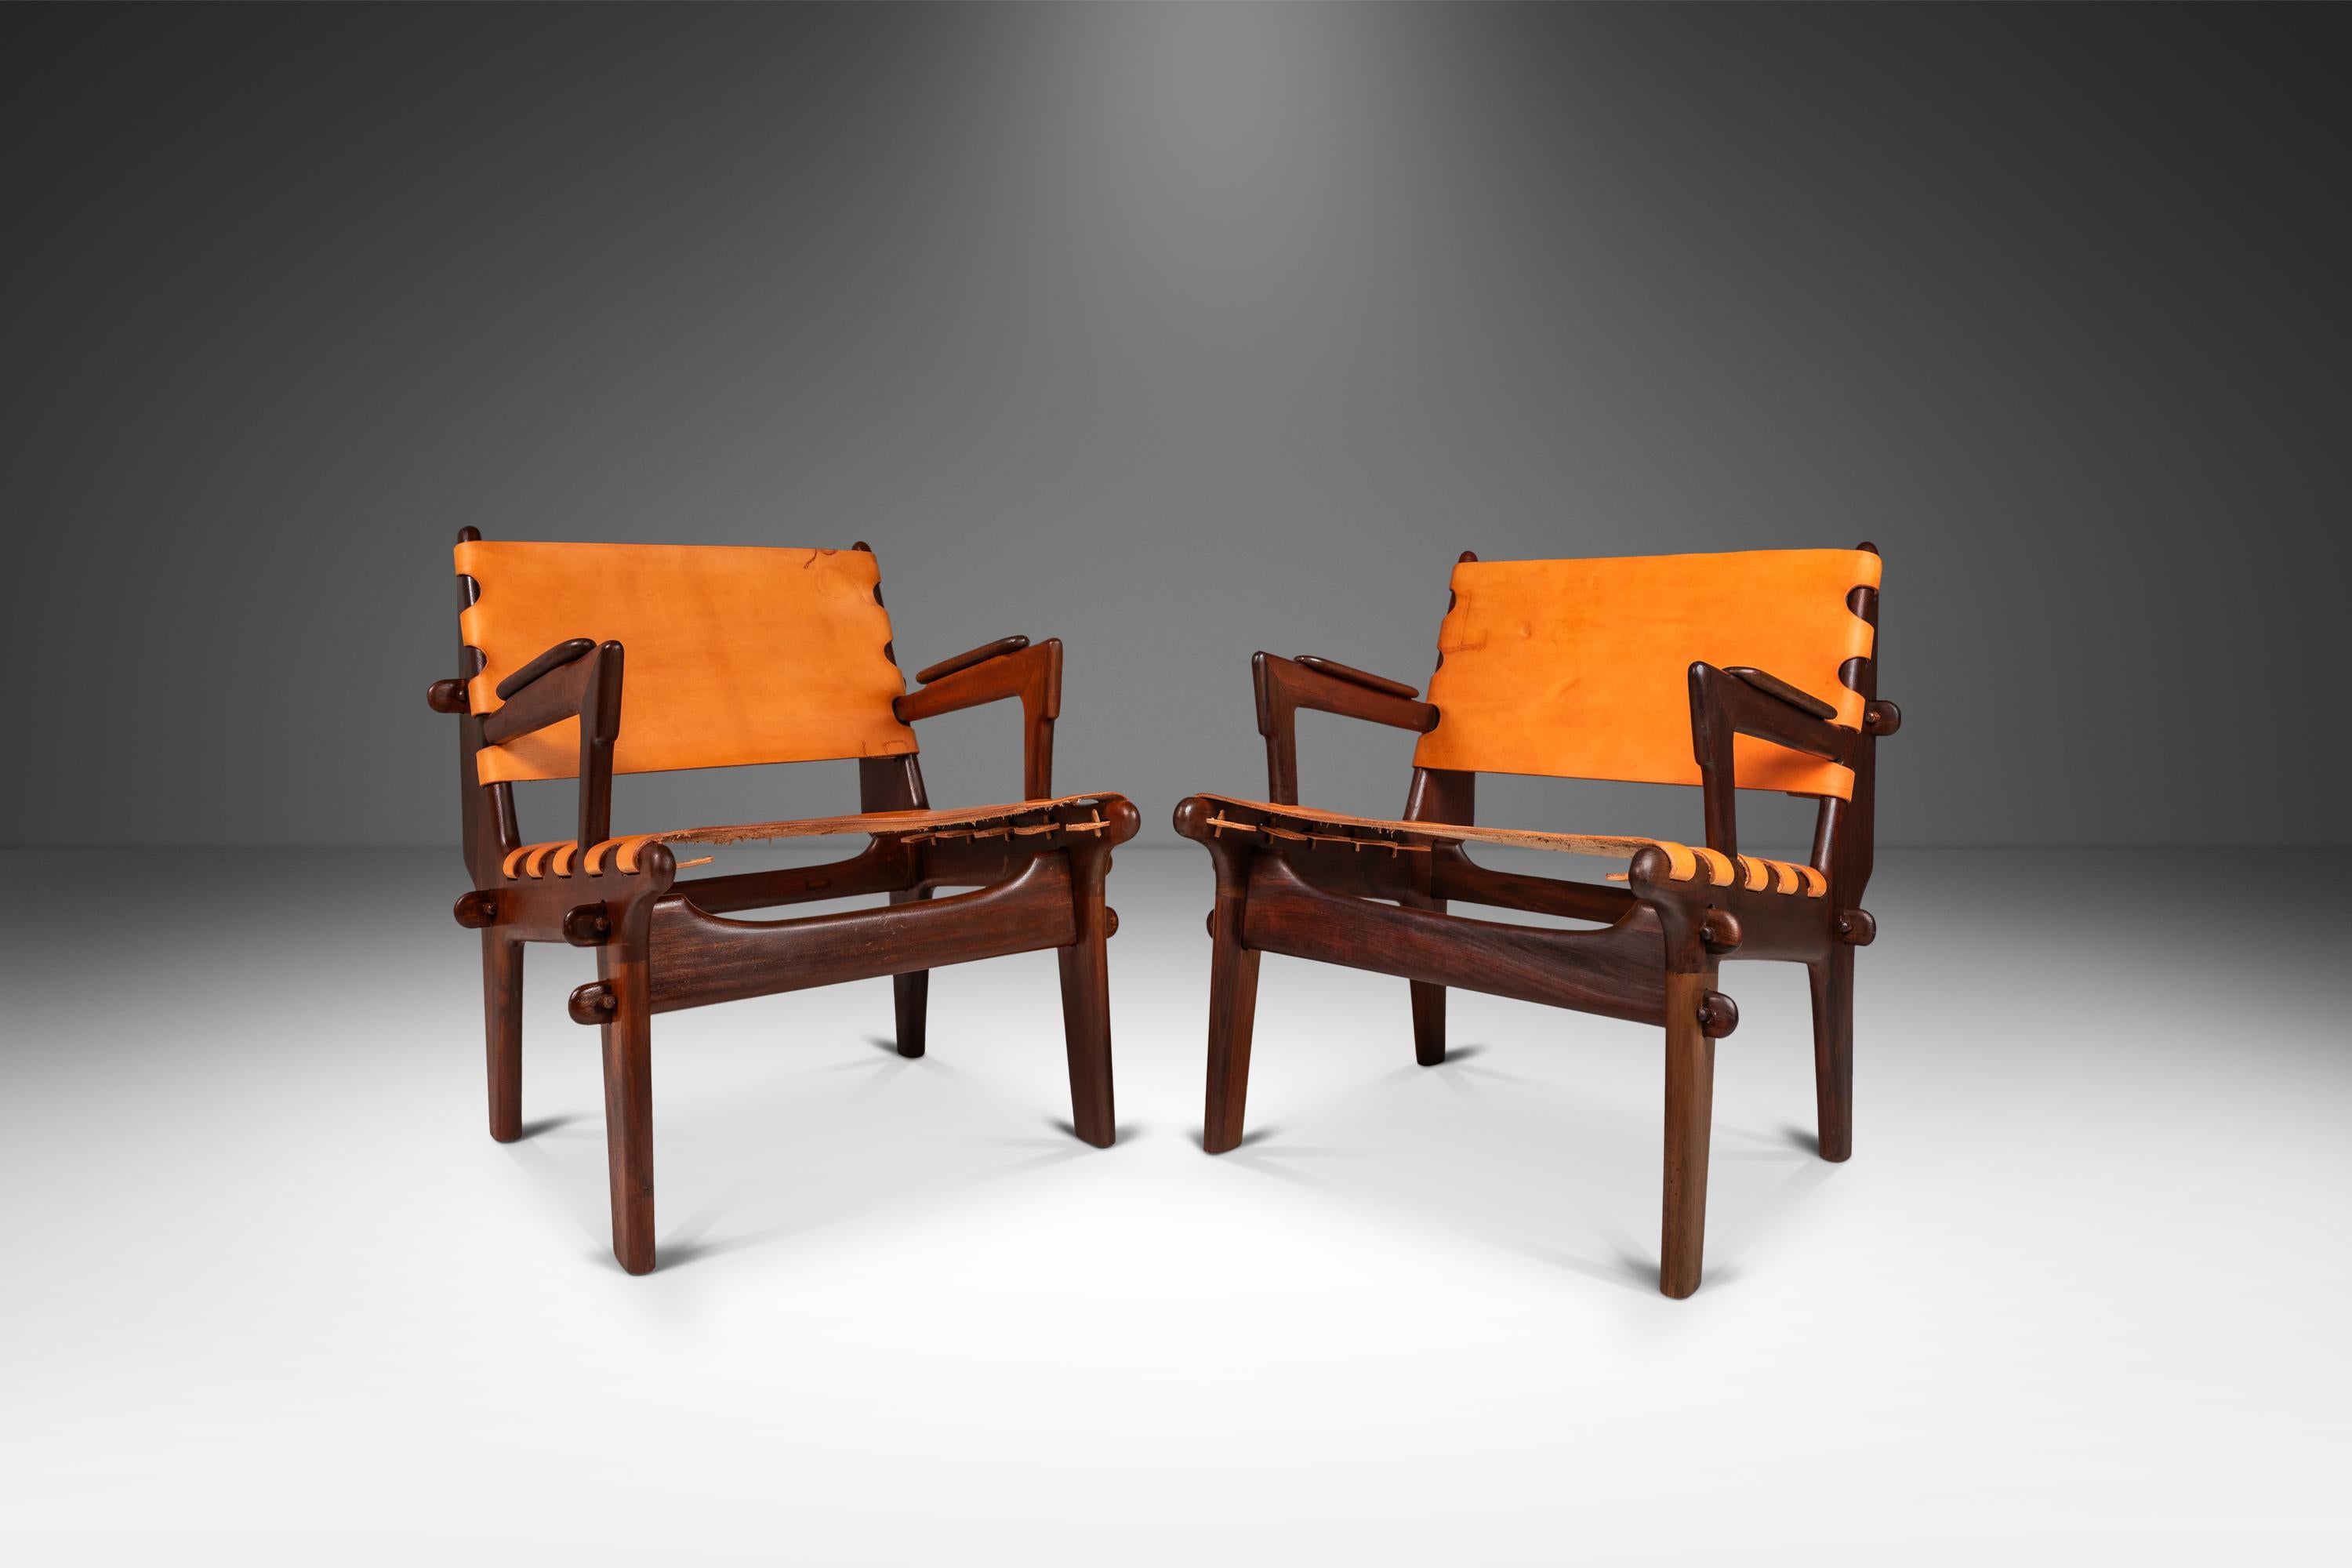  Voici un ensemble rare de chaises à bretelles de l'incomparable Angel Pazmino. Récemment et minutieusement restauré par notre équipe d'artisans, cet ensemble emblématique a retrouvé une nouvelle jeunesse et nous adorons le résultat. Les cadres en